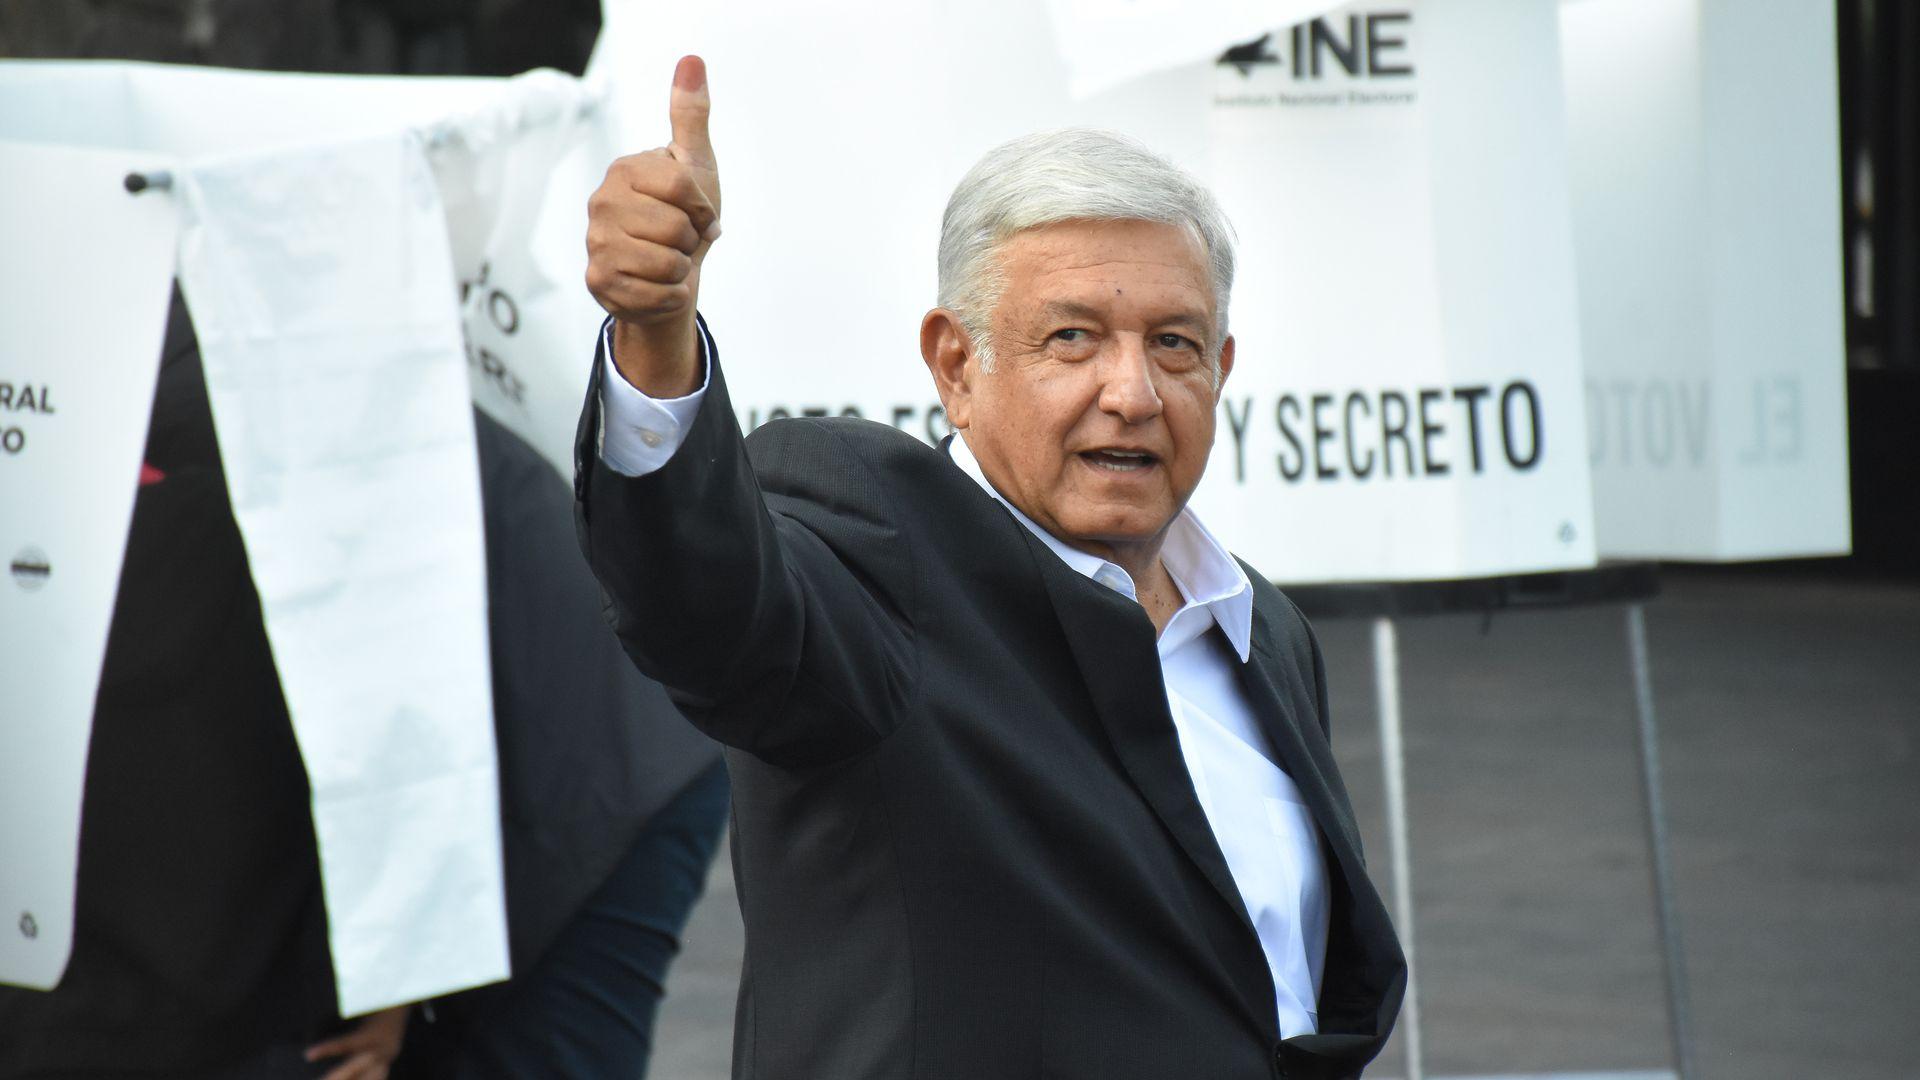 Andrés Manuel López Obrador wins Mexican presidency